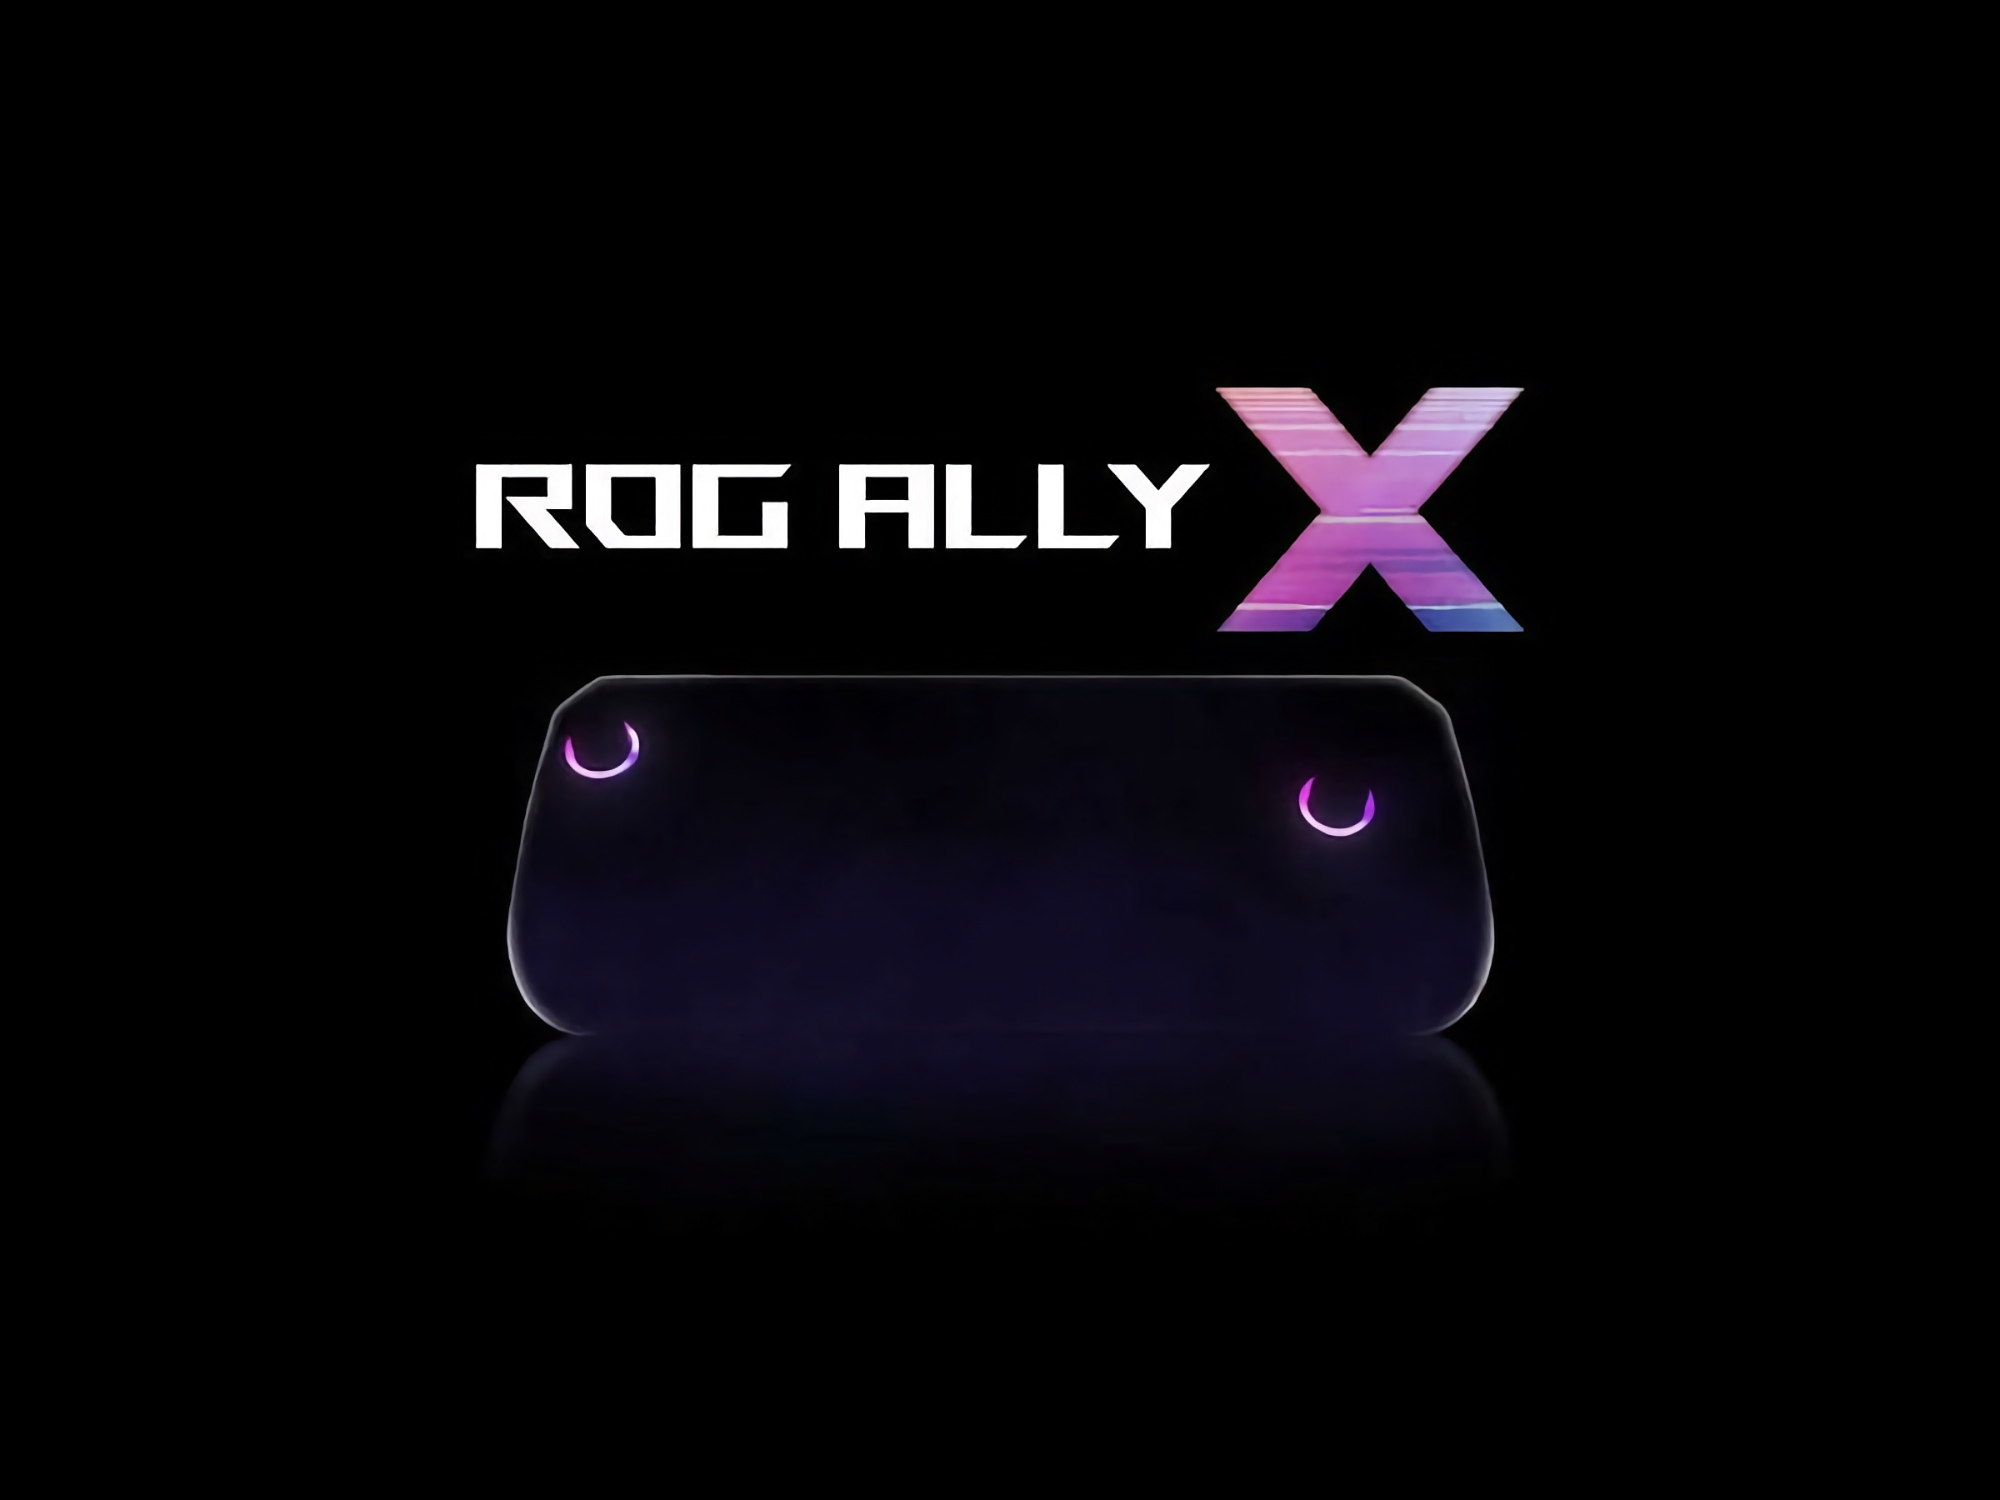 Tres semanas antes del lanzamiento: Las especificaciones y el precio de la consola de juegos ASUS ROG Ally X se revelan en Internet